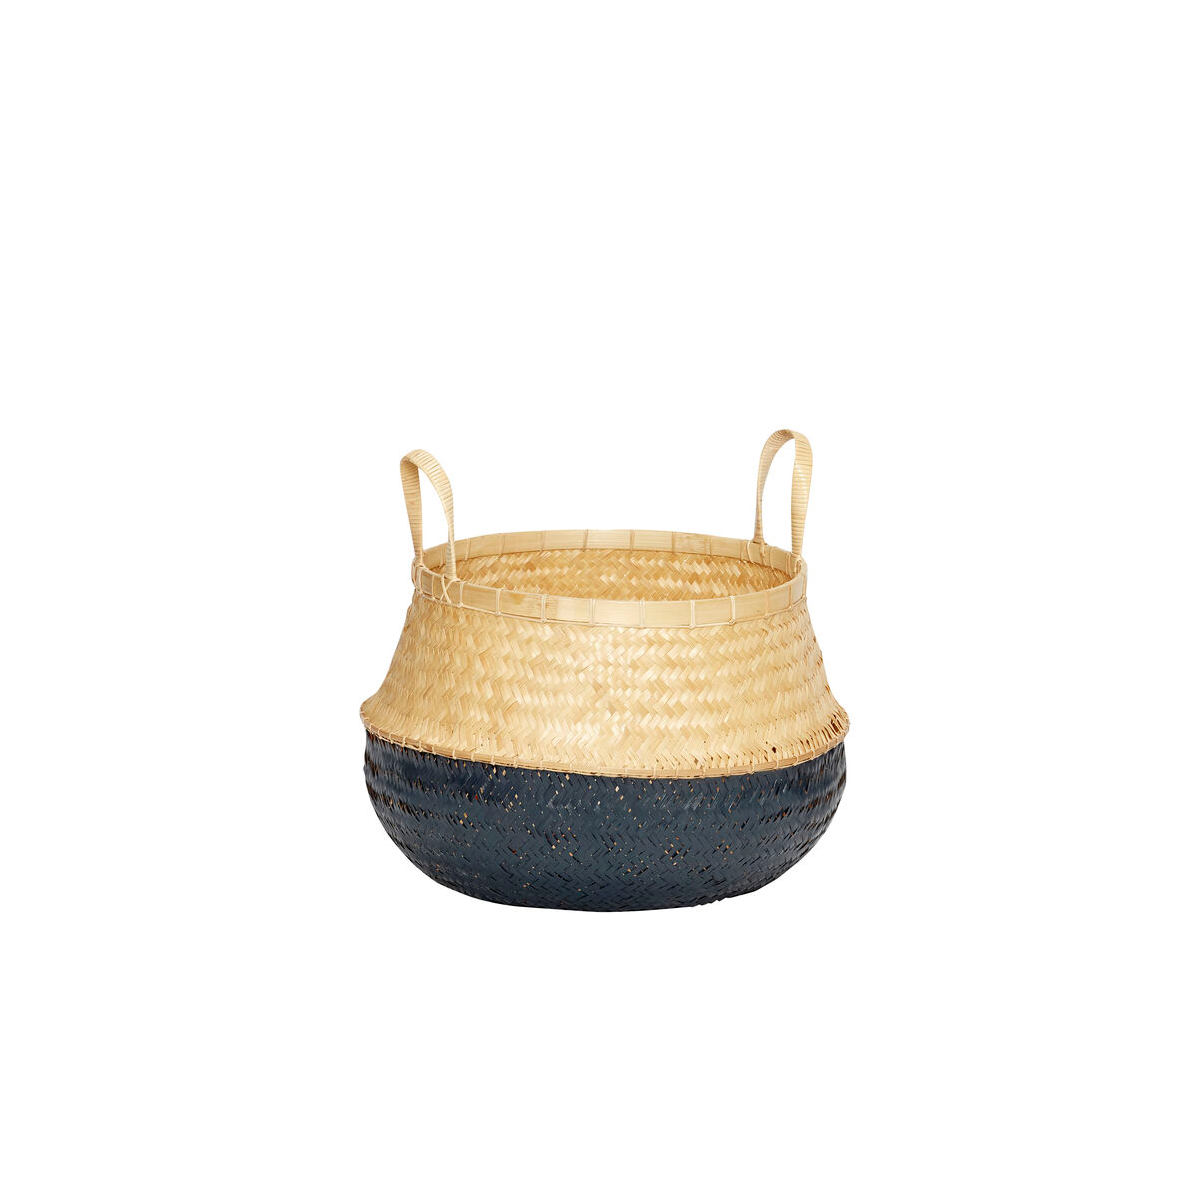 Black/Natural Rattan Belly Basket in Large